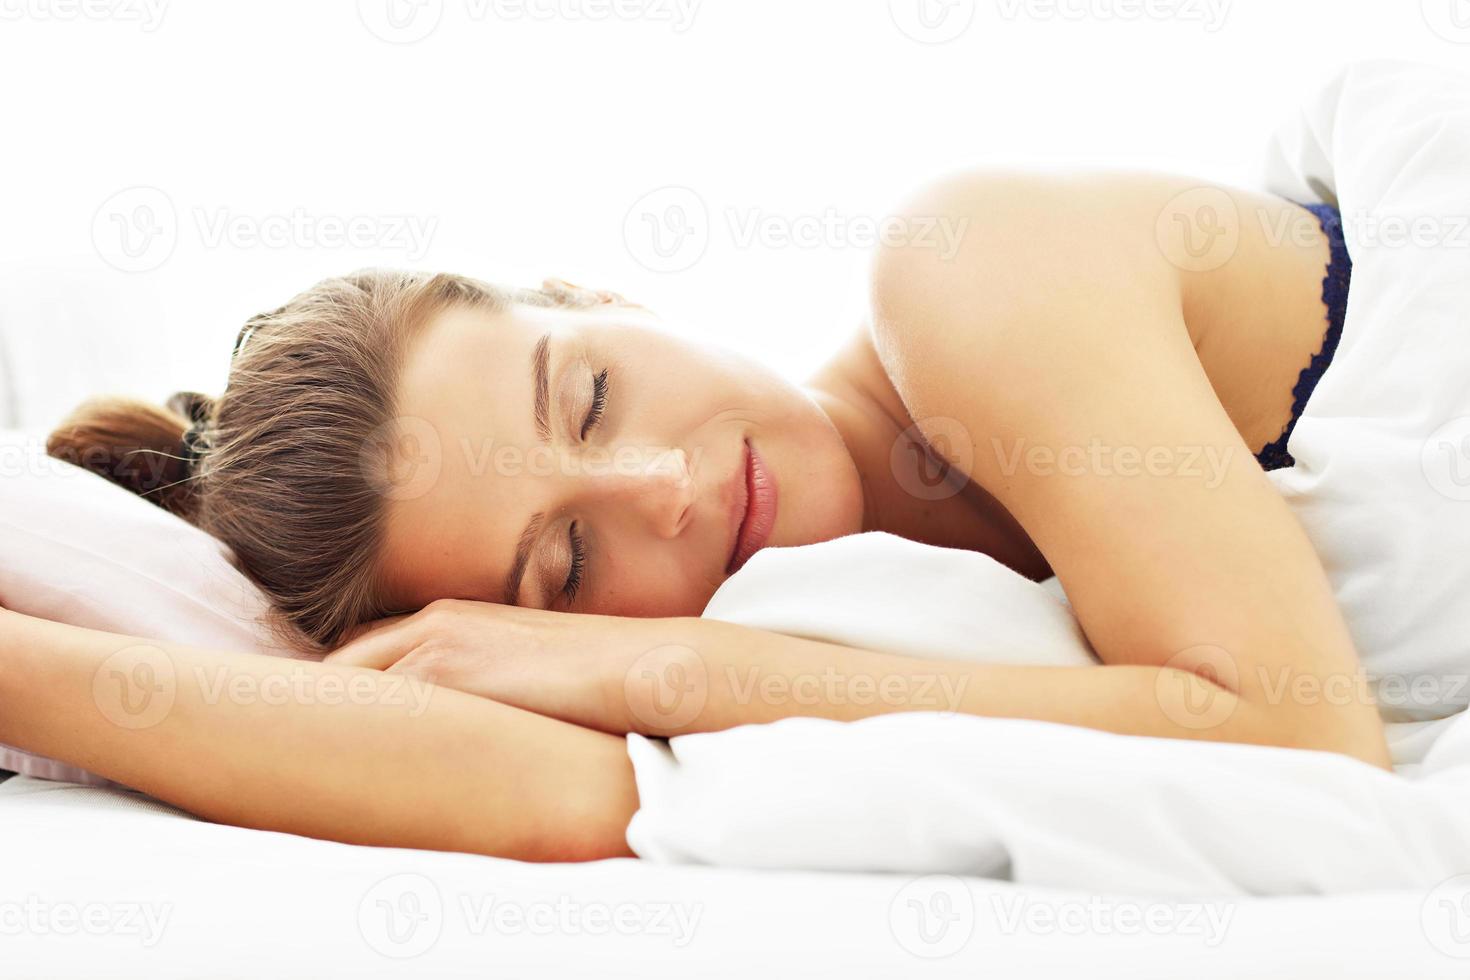 mujer joven durmiendo en la cama foto